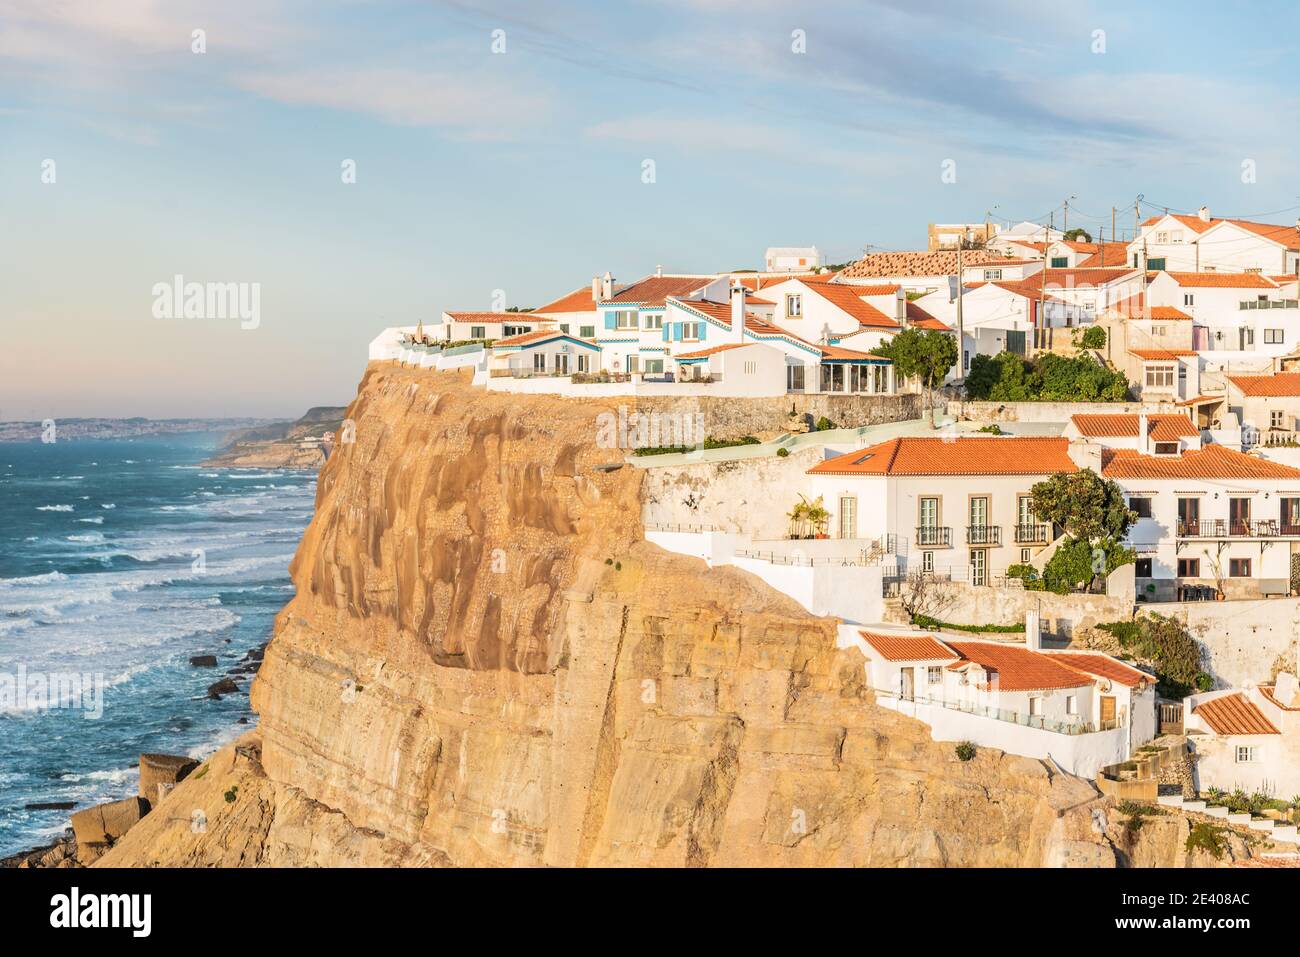 Azenhas do Mar site touristique du village blanc sur la falaise et l'océan Atlantique, Sintra, Lisbonne, Portugal, Europe, image couleur Banque D'Images